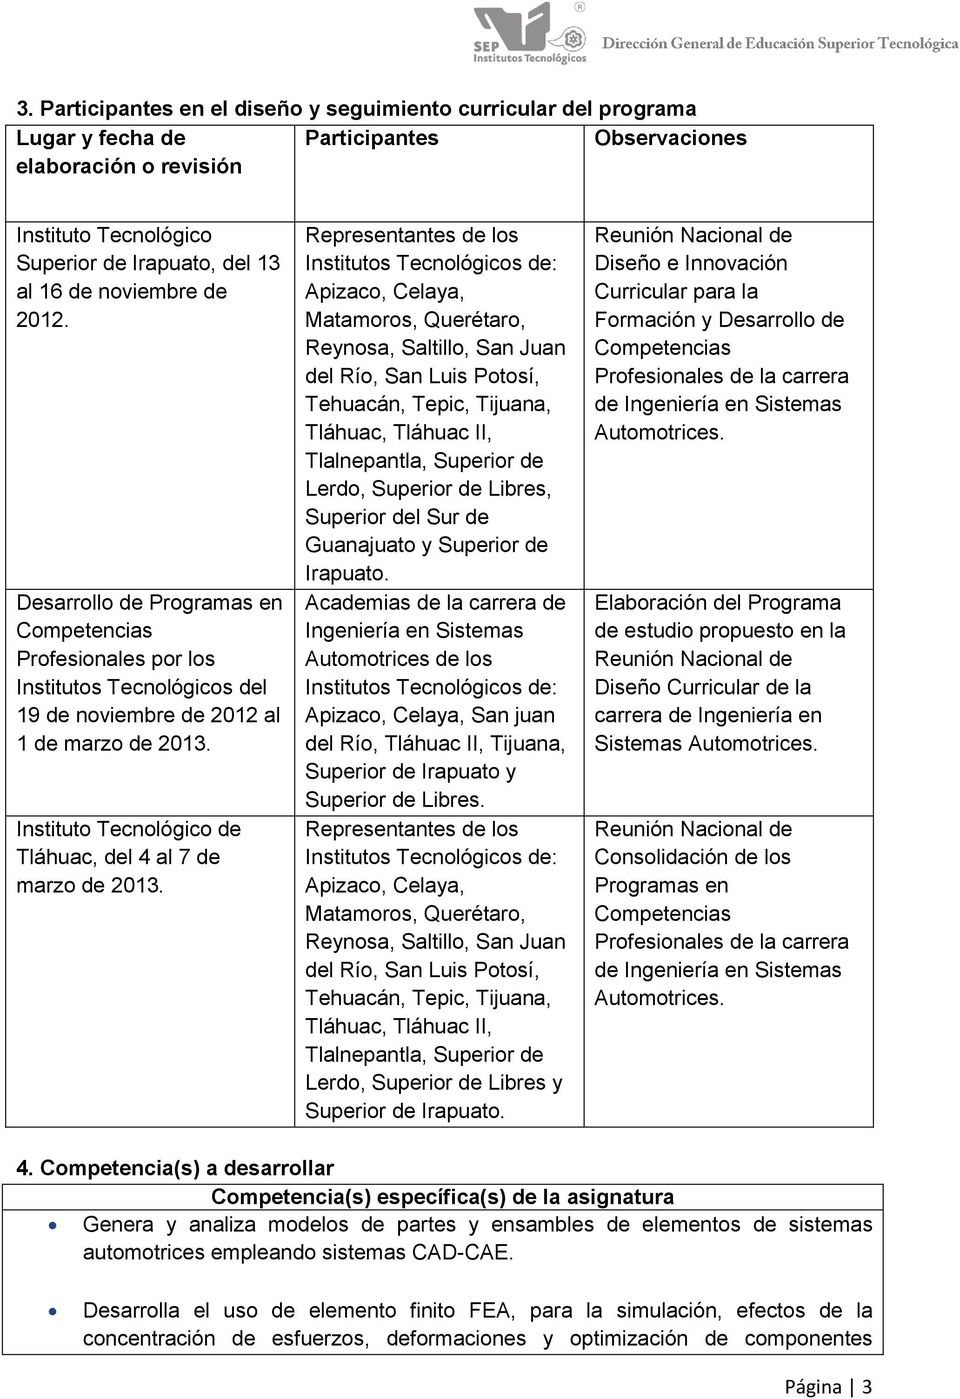 Instituto Tecnológico de Tláhuac, del 4 al 7 de marzo de 2013.